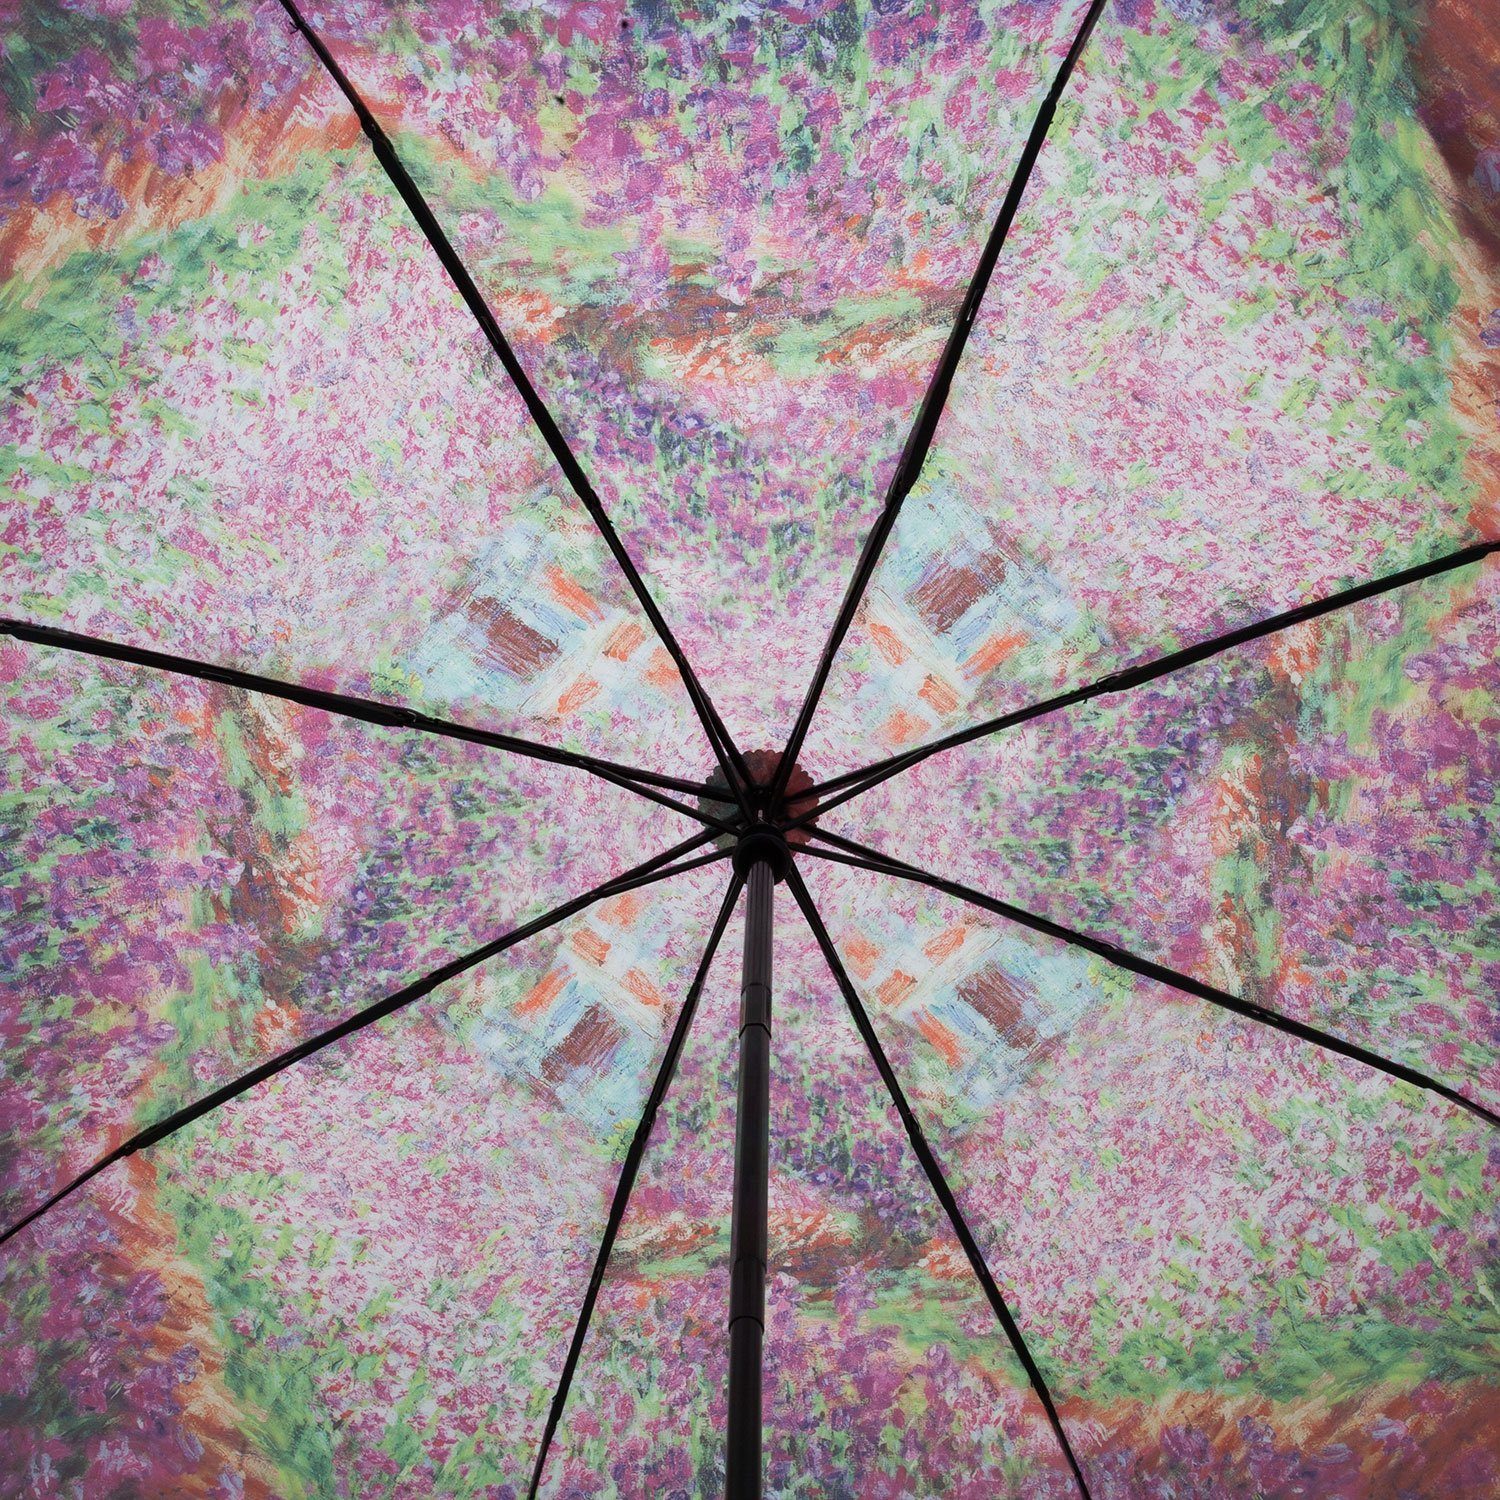 Taschenschirm Automatik ROSEMARIE Regenschirm SCHULZ Monet, Sommergarten Heidelberg Auf/Zu -Automatik Taschenregenschirm Claude